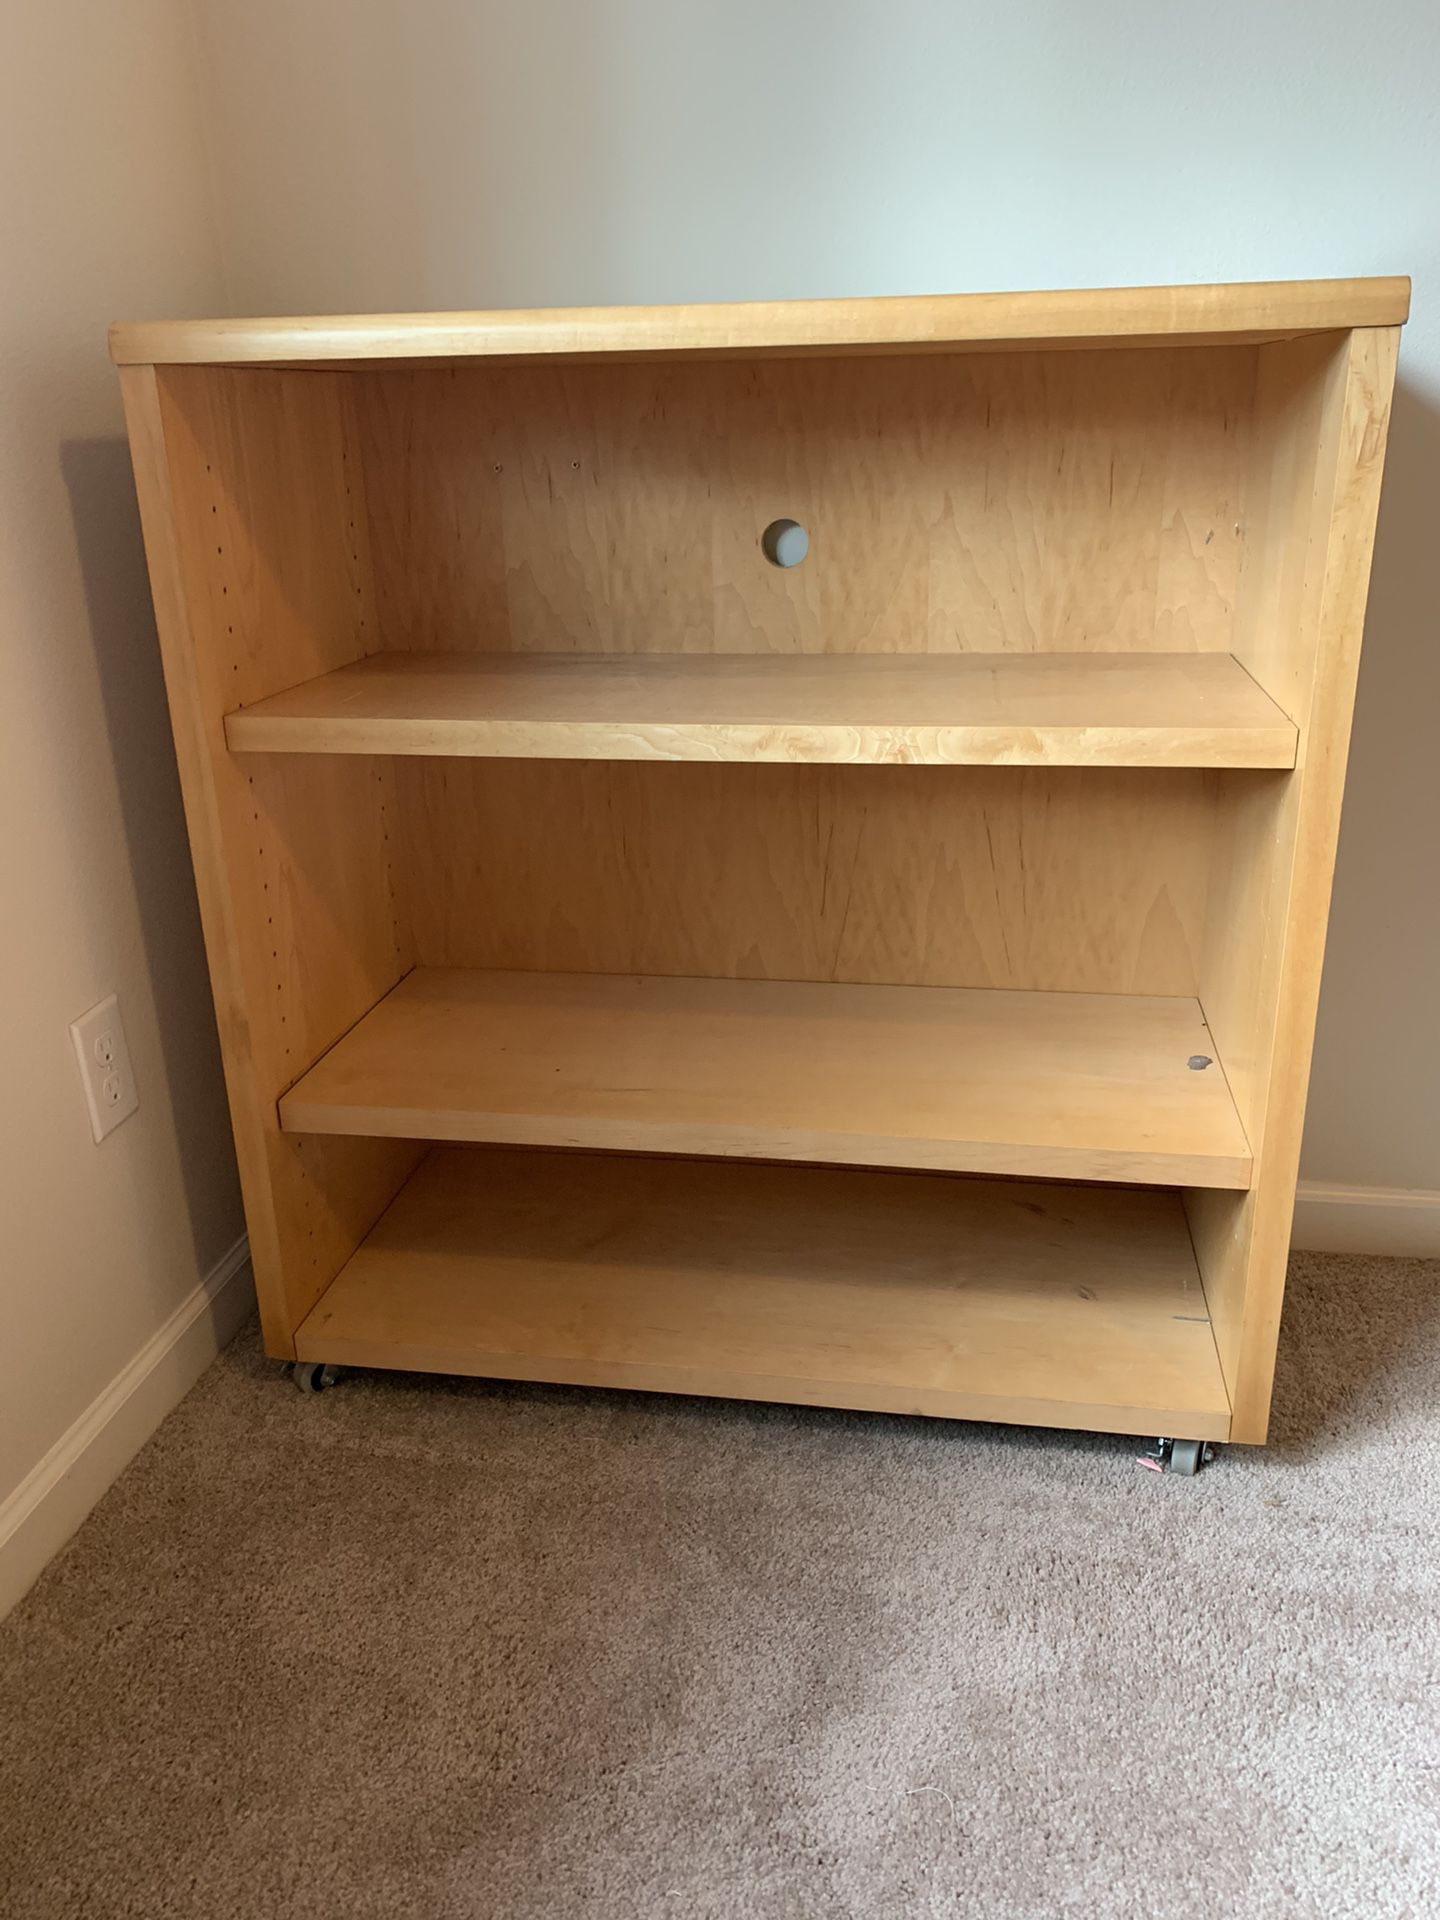 Bookshelf/tv stand